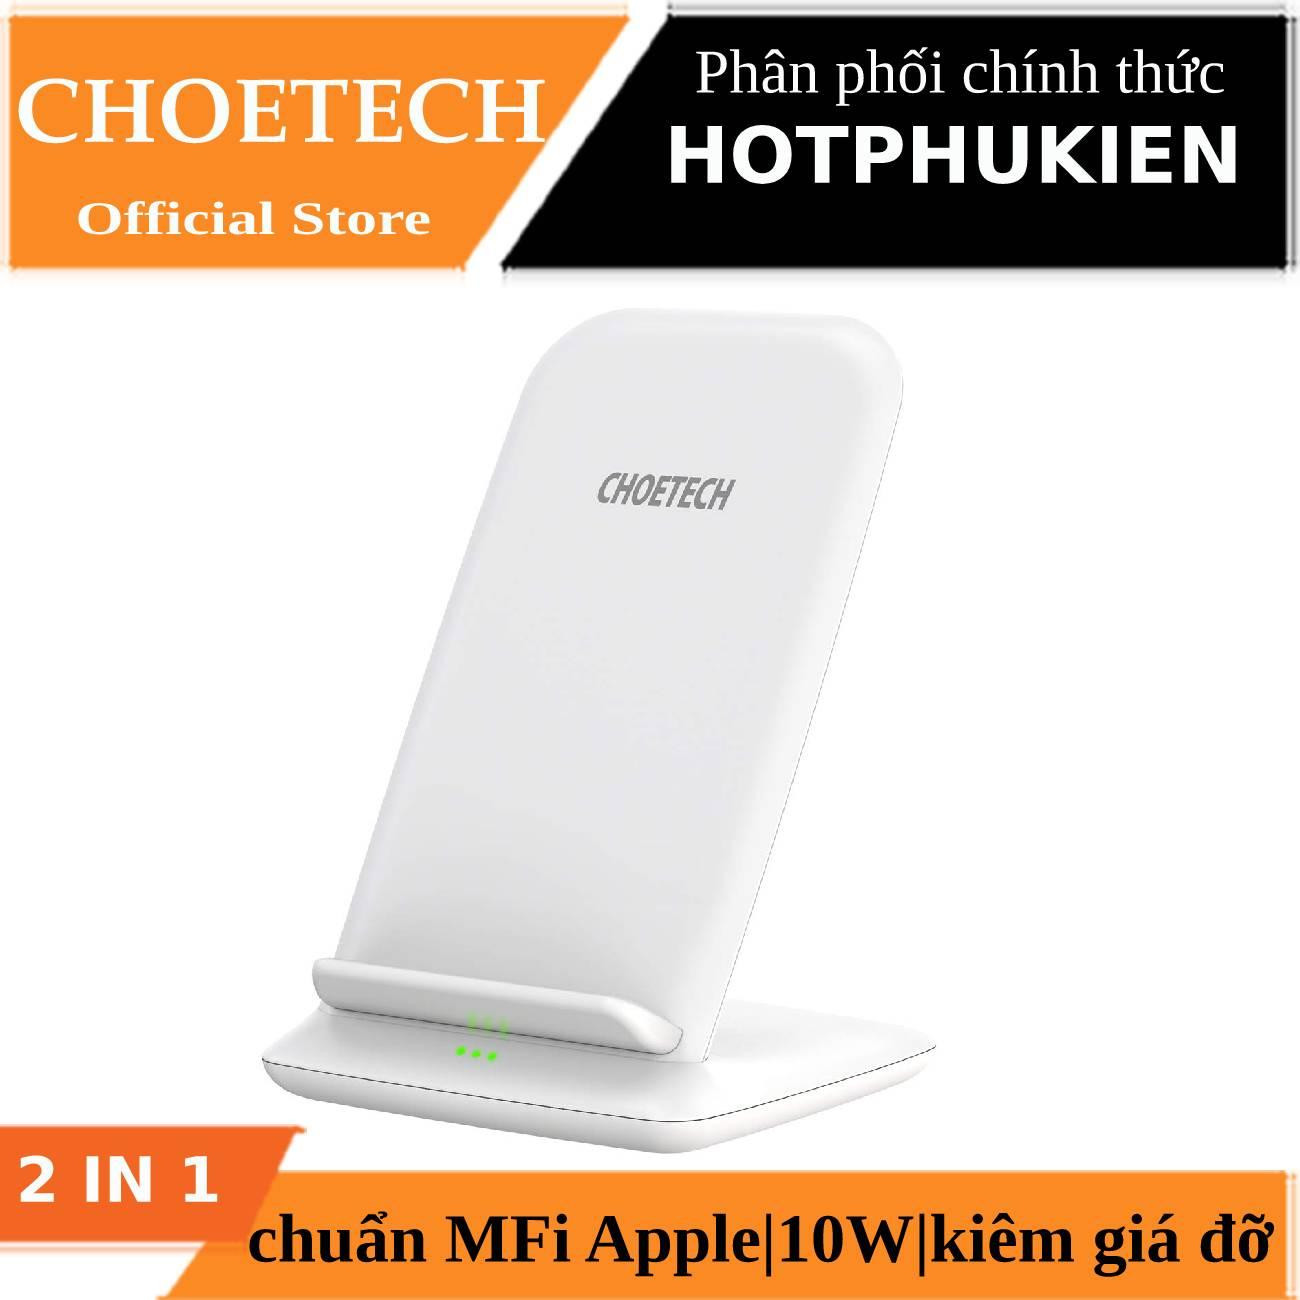 Đế sạc nhanh không dây chuẩn Qi 10W kiêm giá đỡ cho điện thoại hiệu CHOETECH HPK-T555